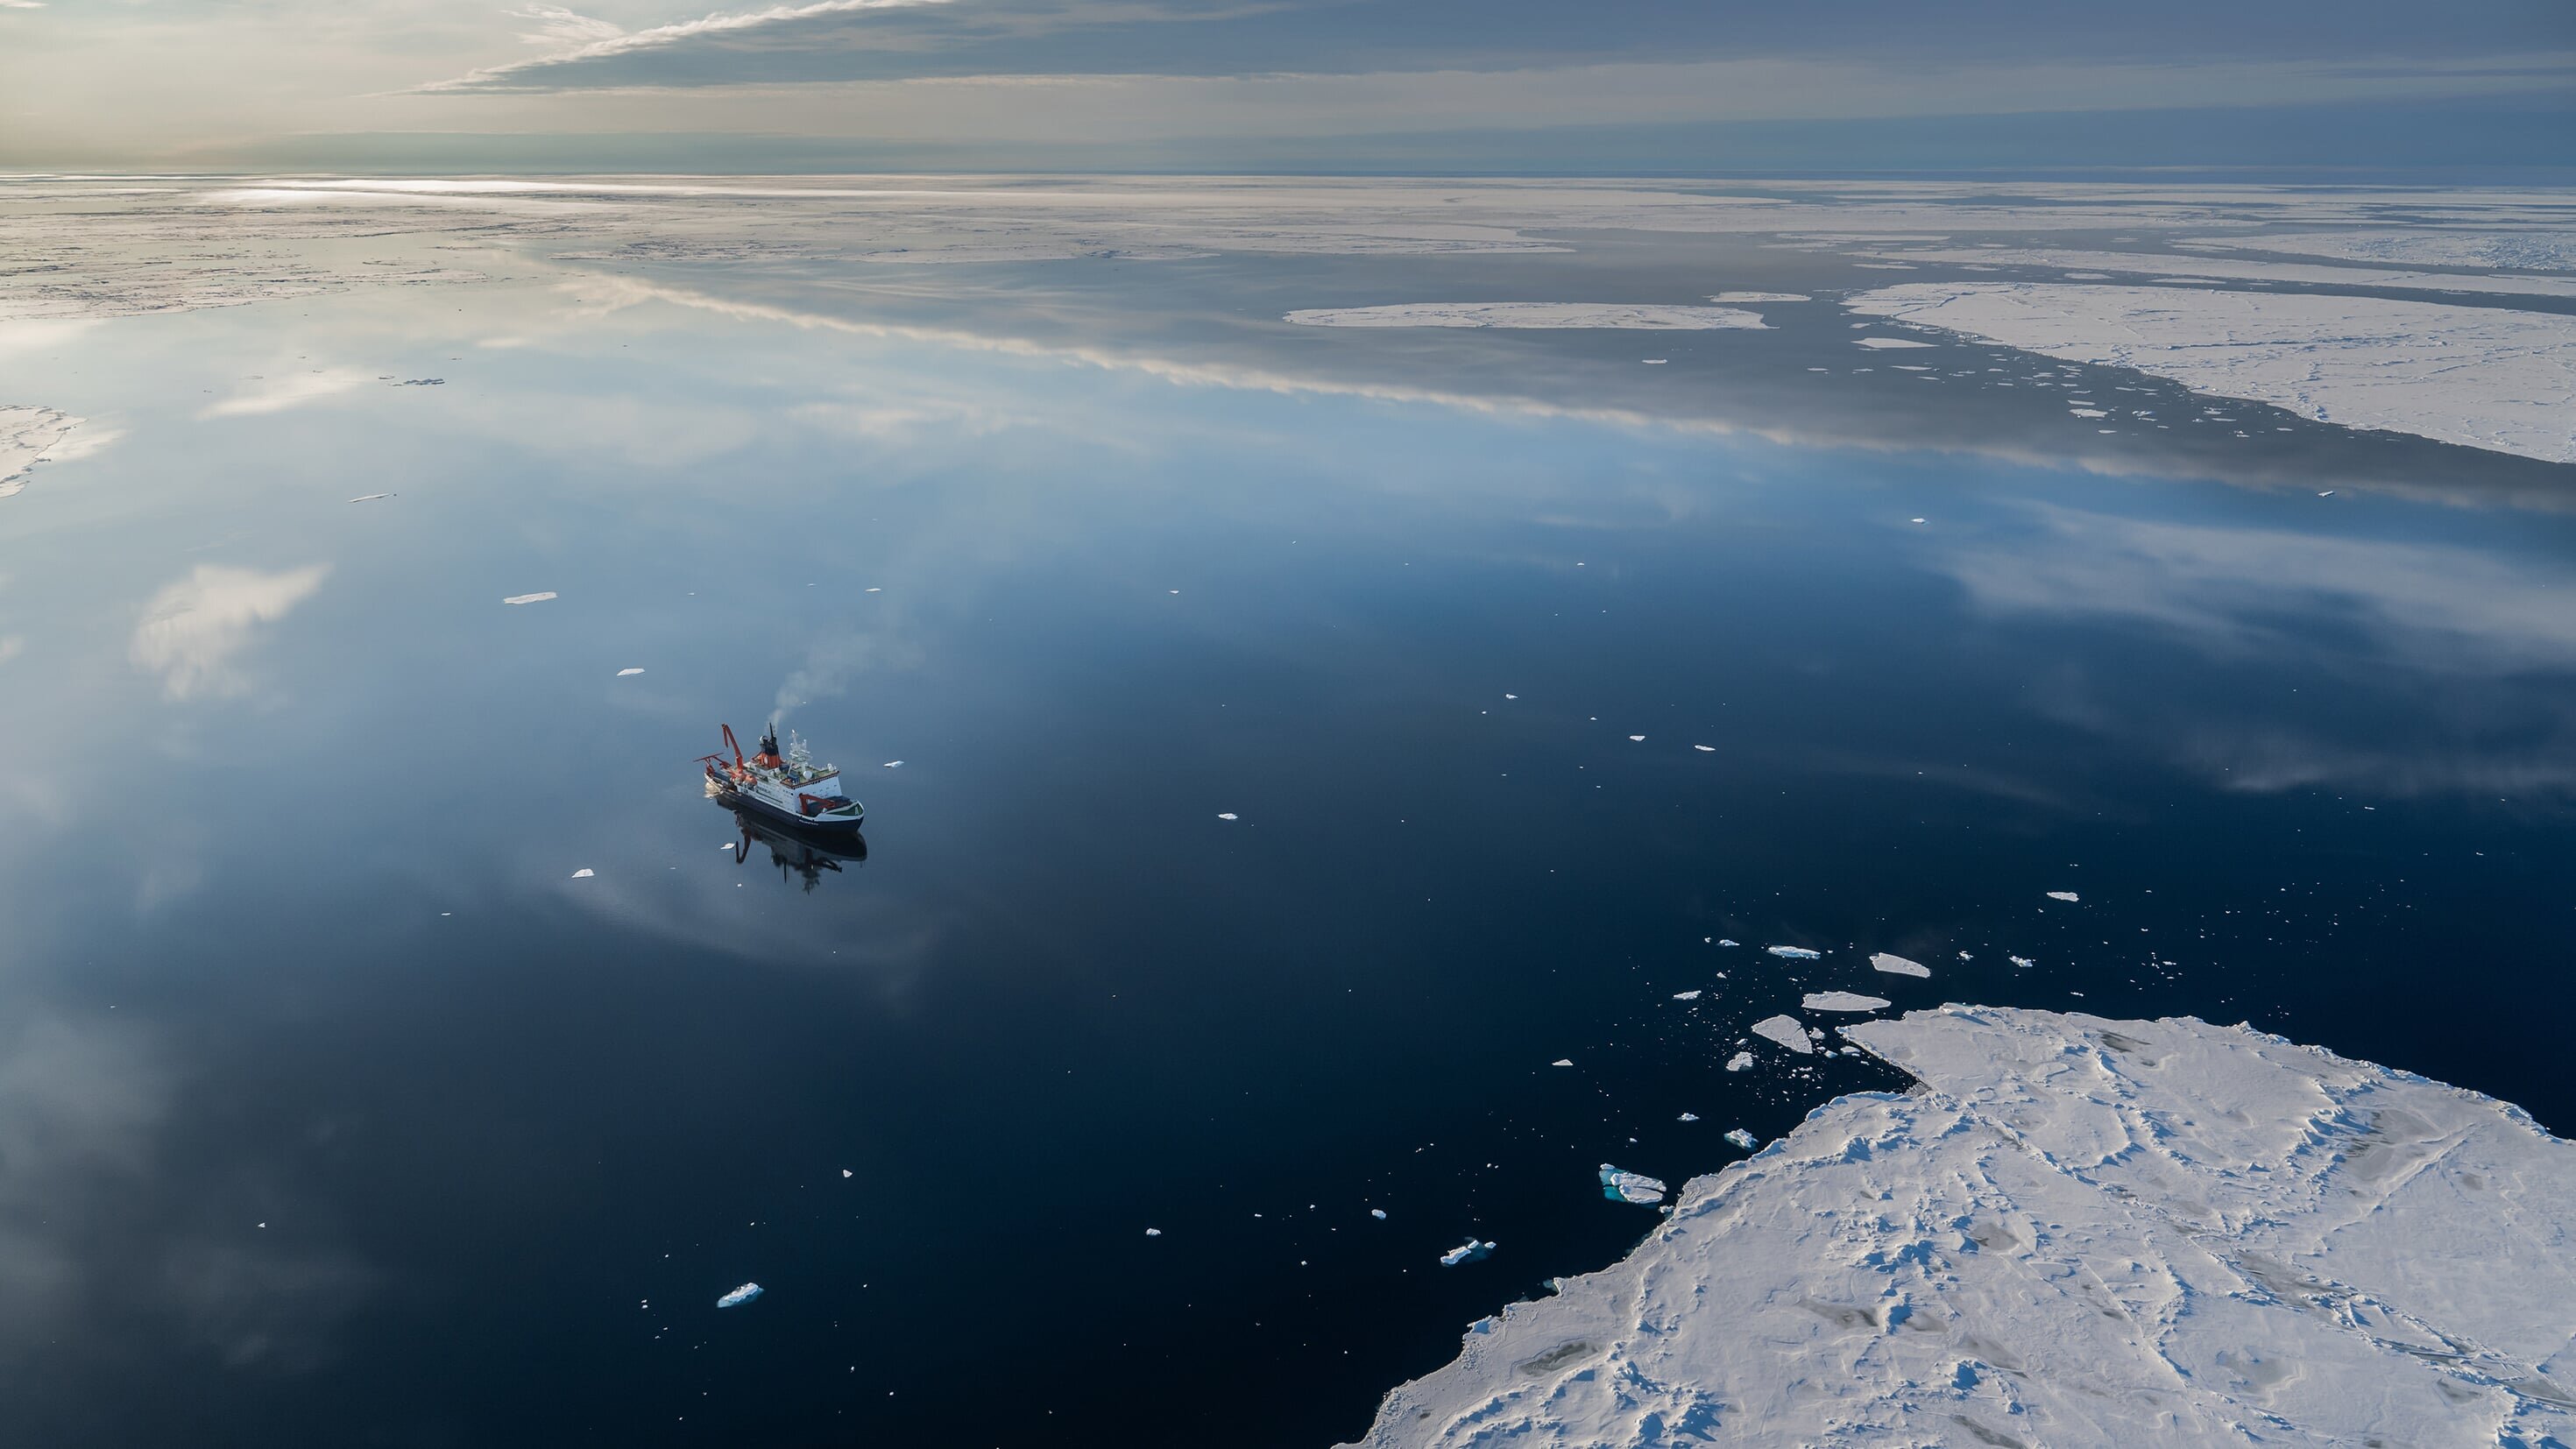 Expedition Arktis 2 – Tauchfahrt am Nordpol